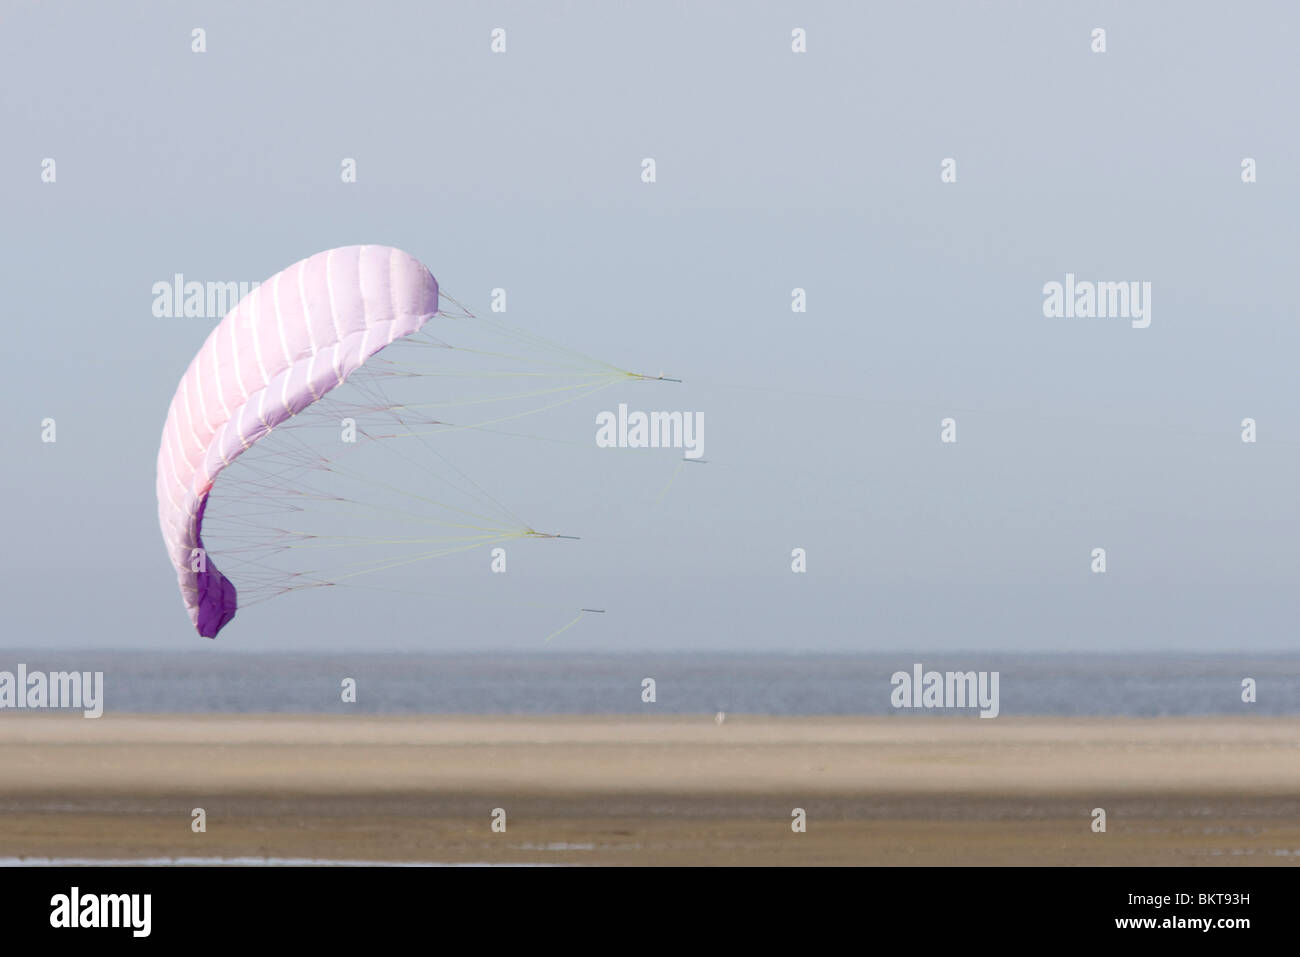 Kite on the beach Stock Photo